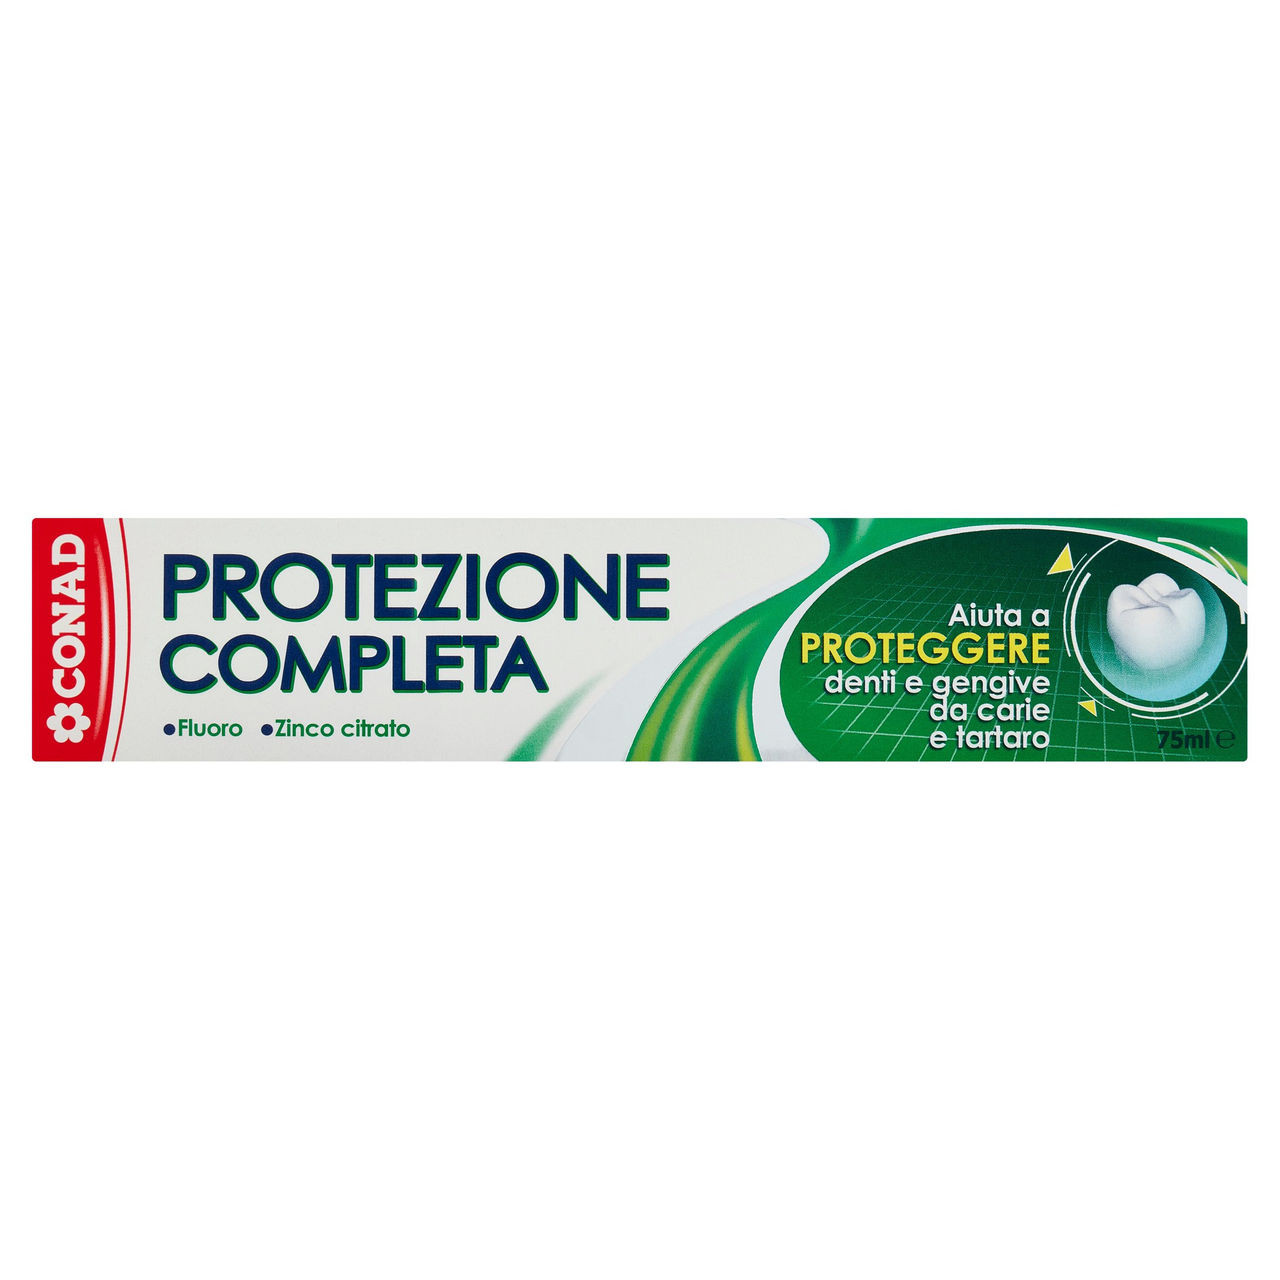 Dentifricio Protezione Completa 75 ml Conad online